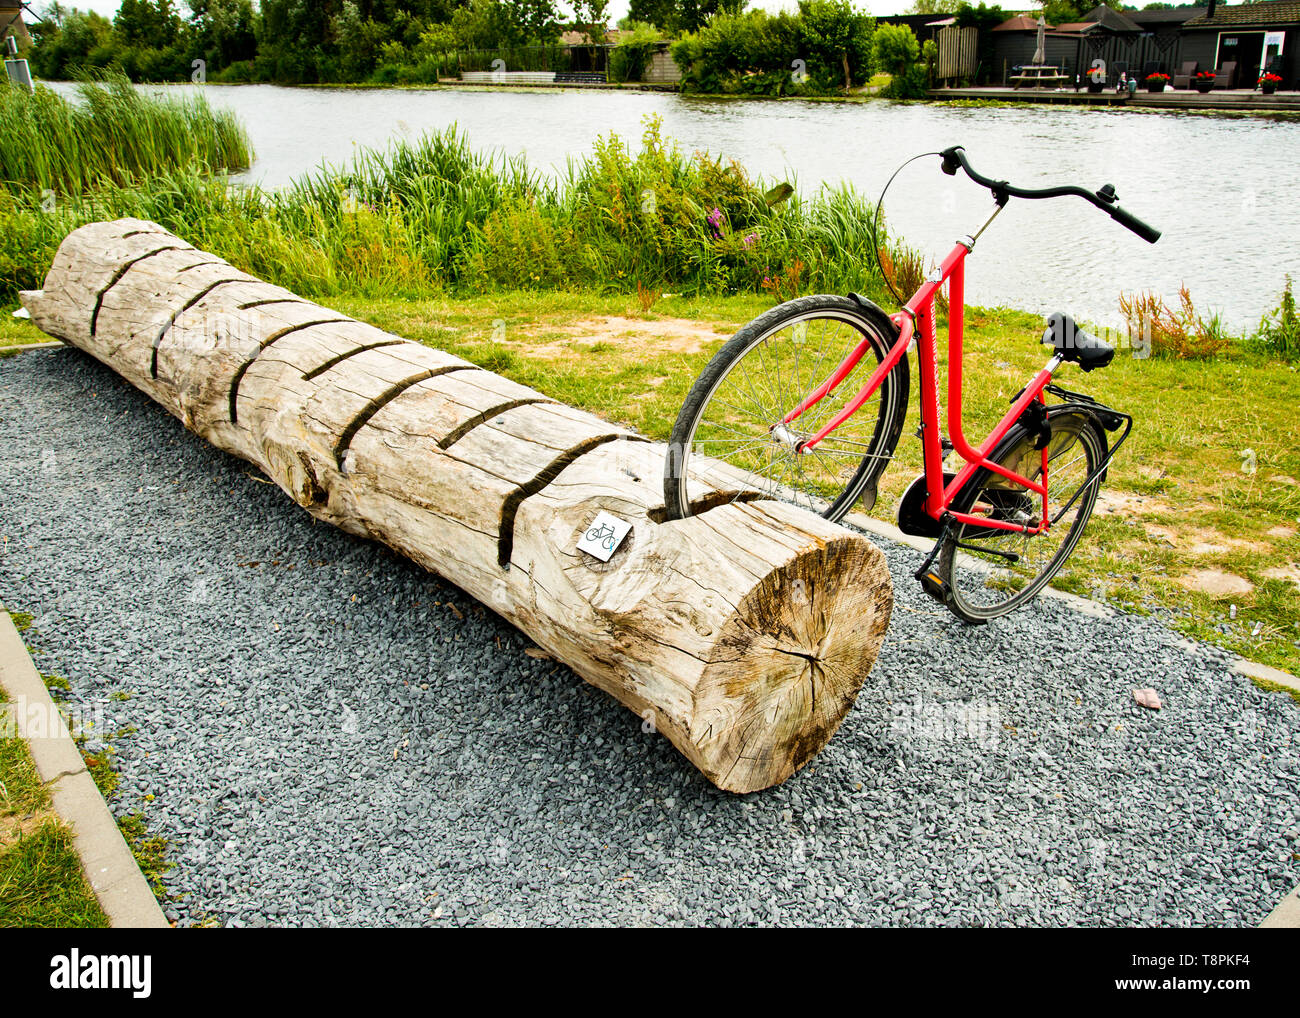 Geparkt Fahrrad in einem ungewöhnlichen Holz-Fahrradstand, direkt am Kanal Ufer Radweg. Stockfoto